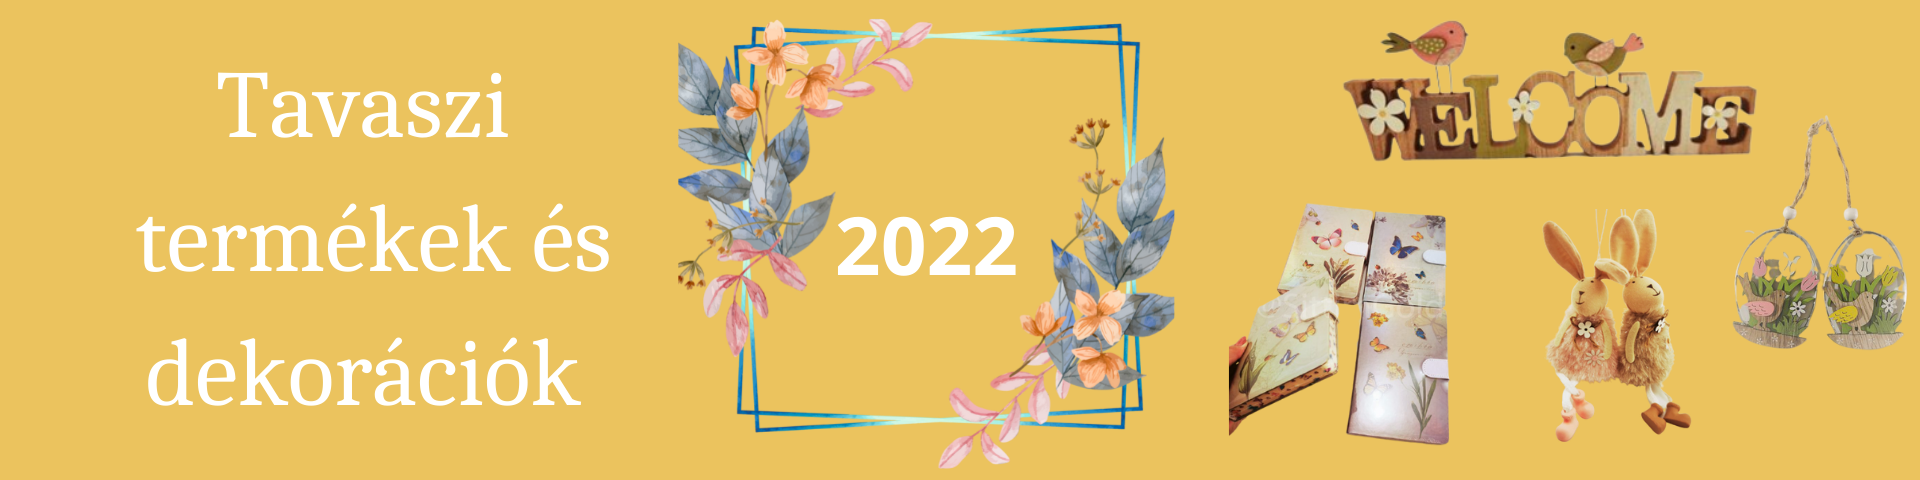 2022 tavaszi termékek és dekorációk